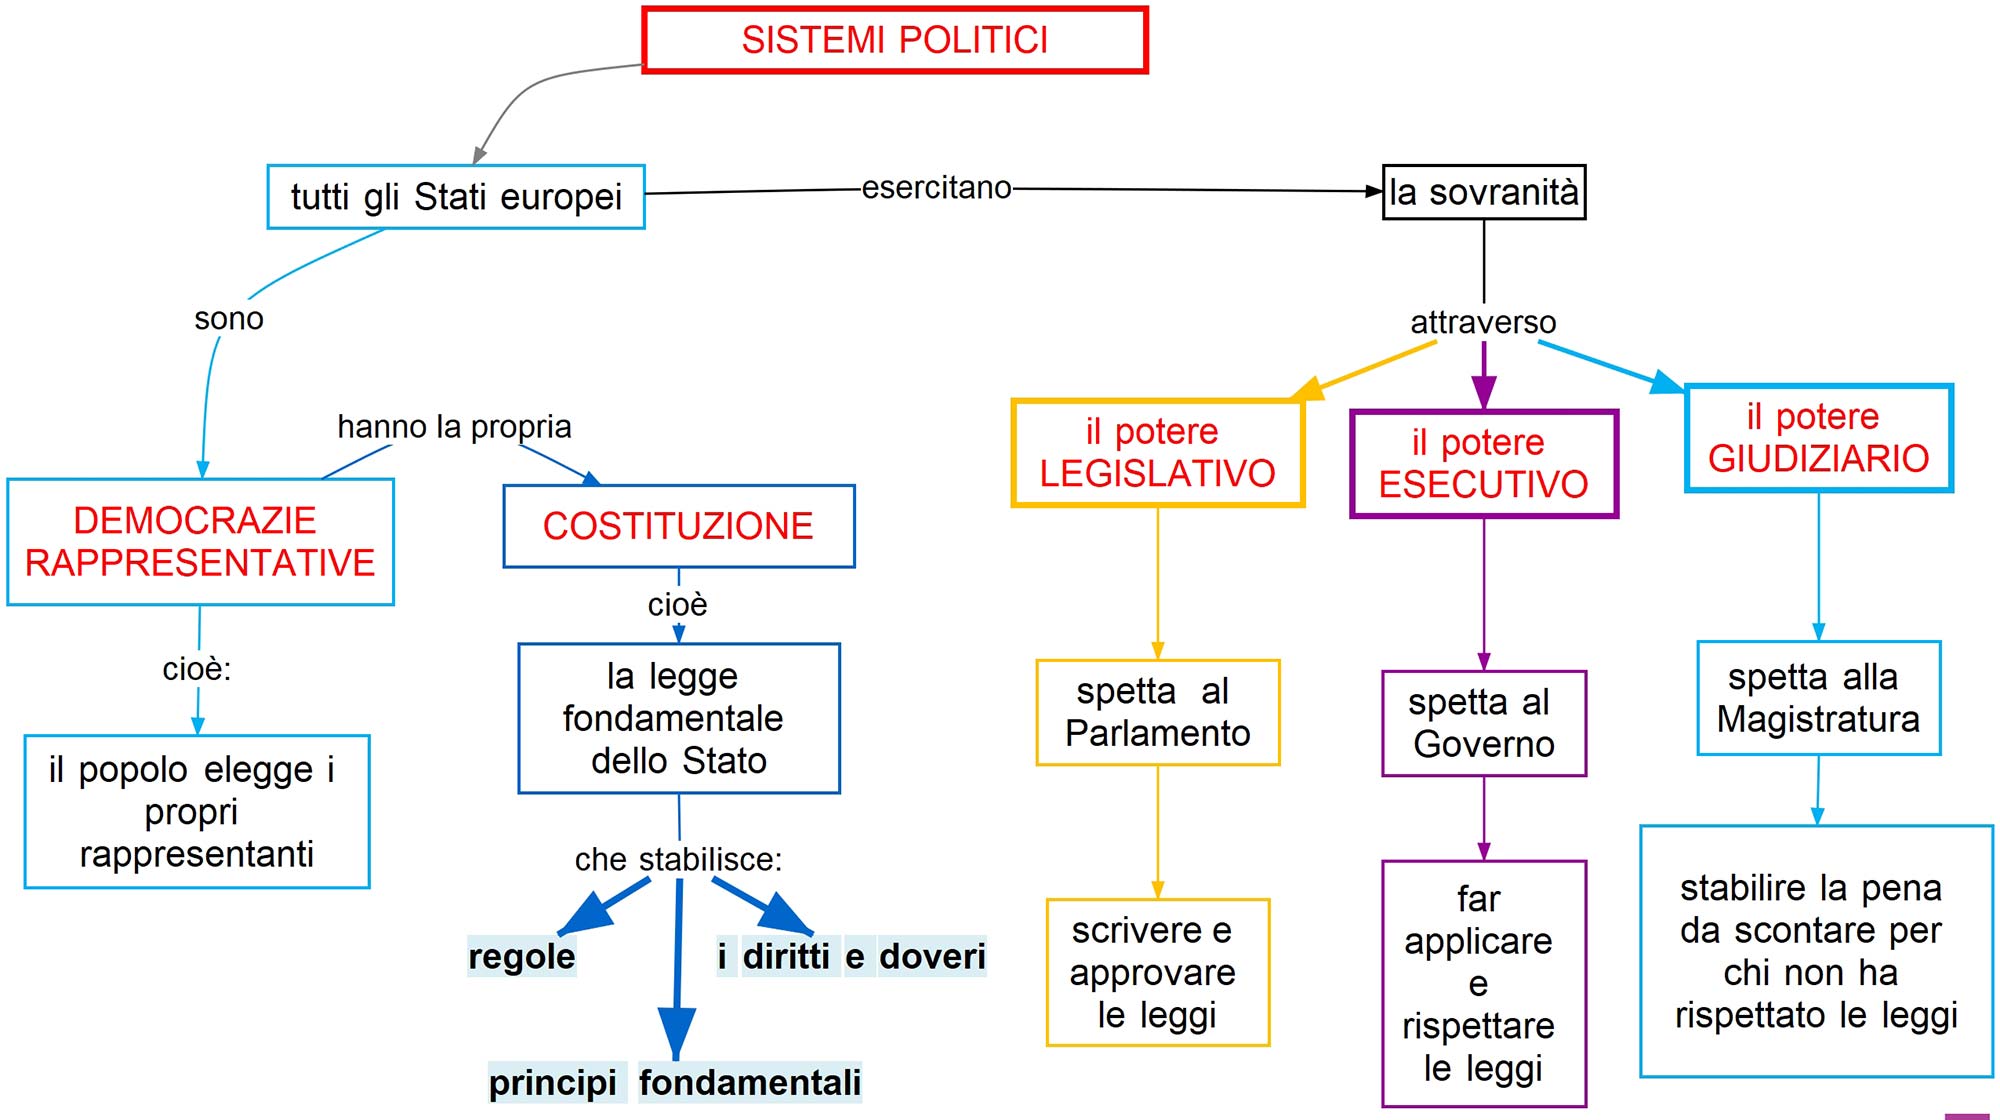 sistemi politici degli stati europei